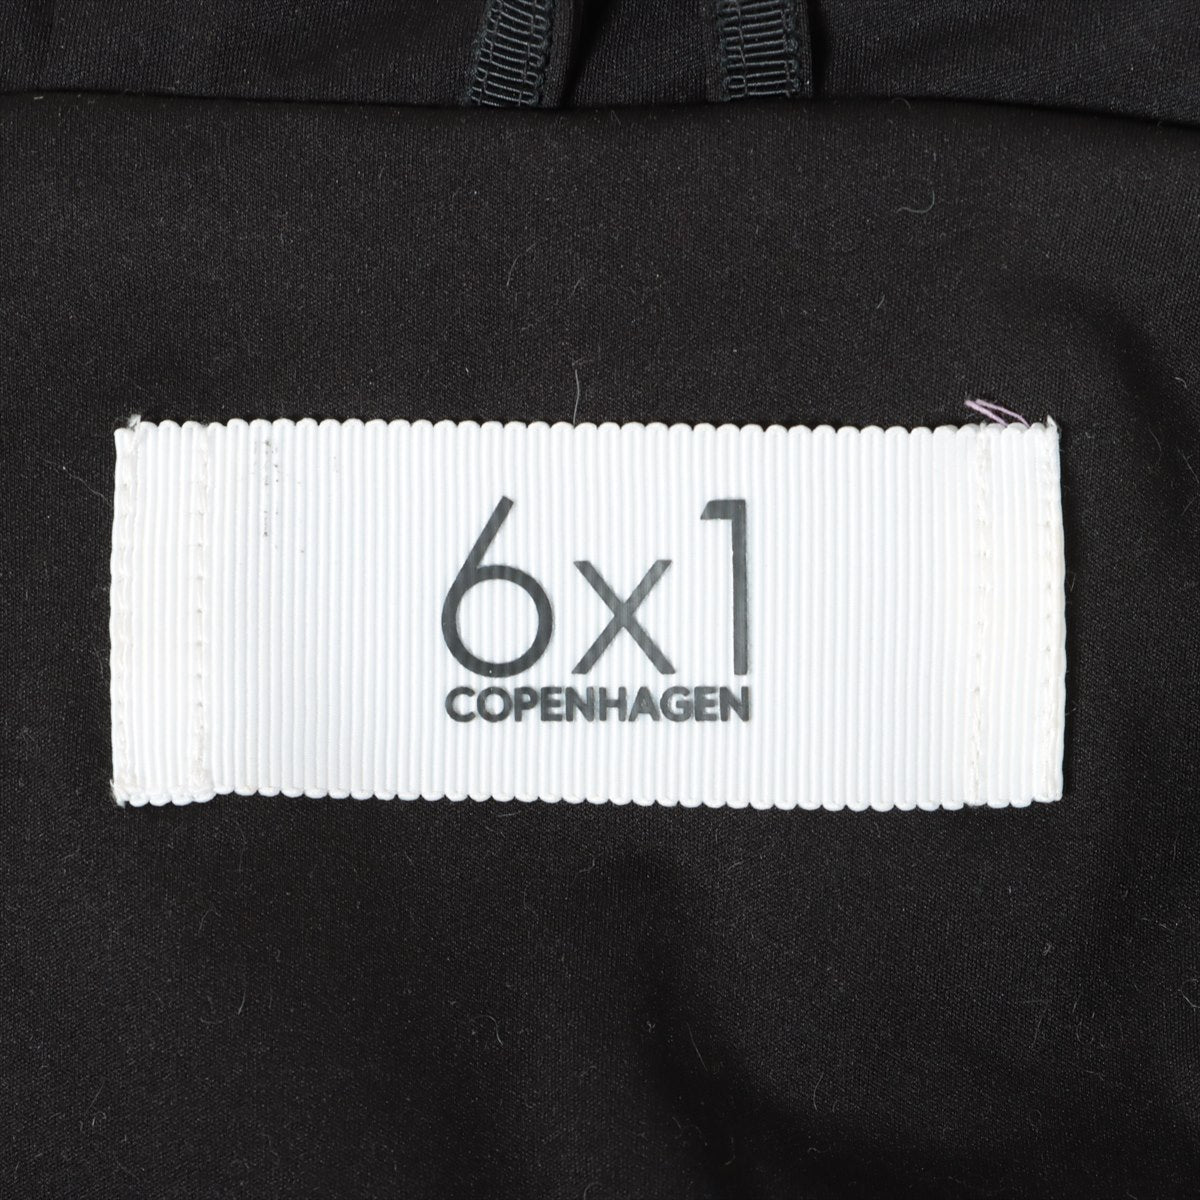 6×1 コペンハーゲン ポリエステル ダウンジャケット 0 レディース ブラック  S06-02-007　シックス バイ ワン コペンハーゲン